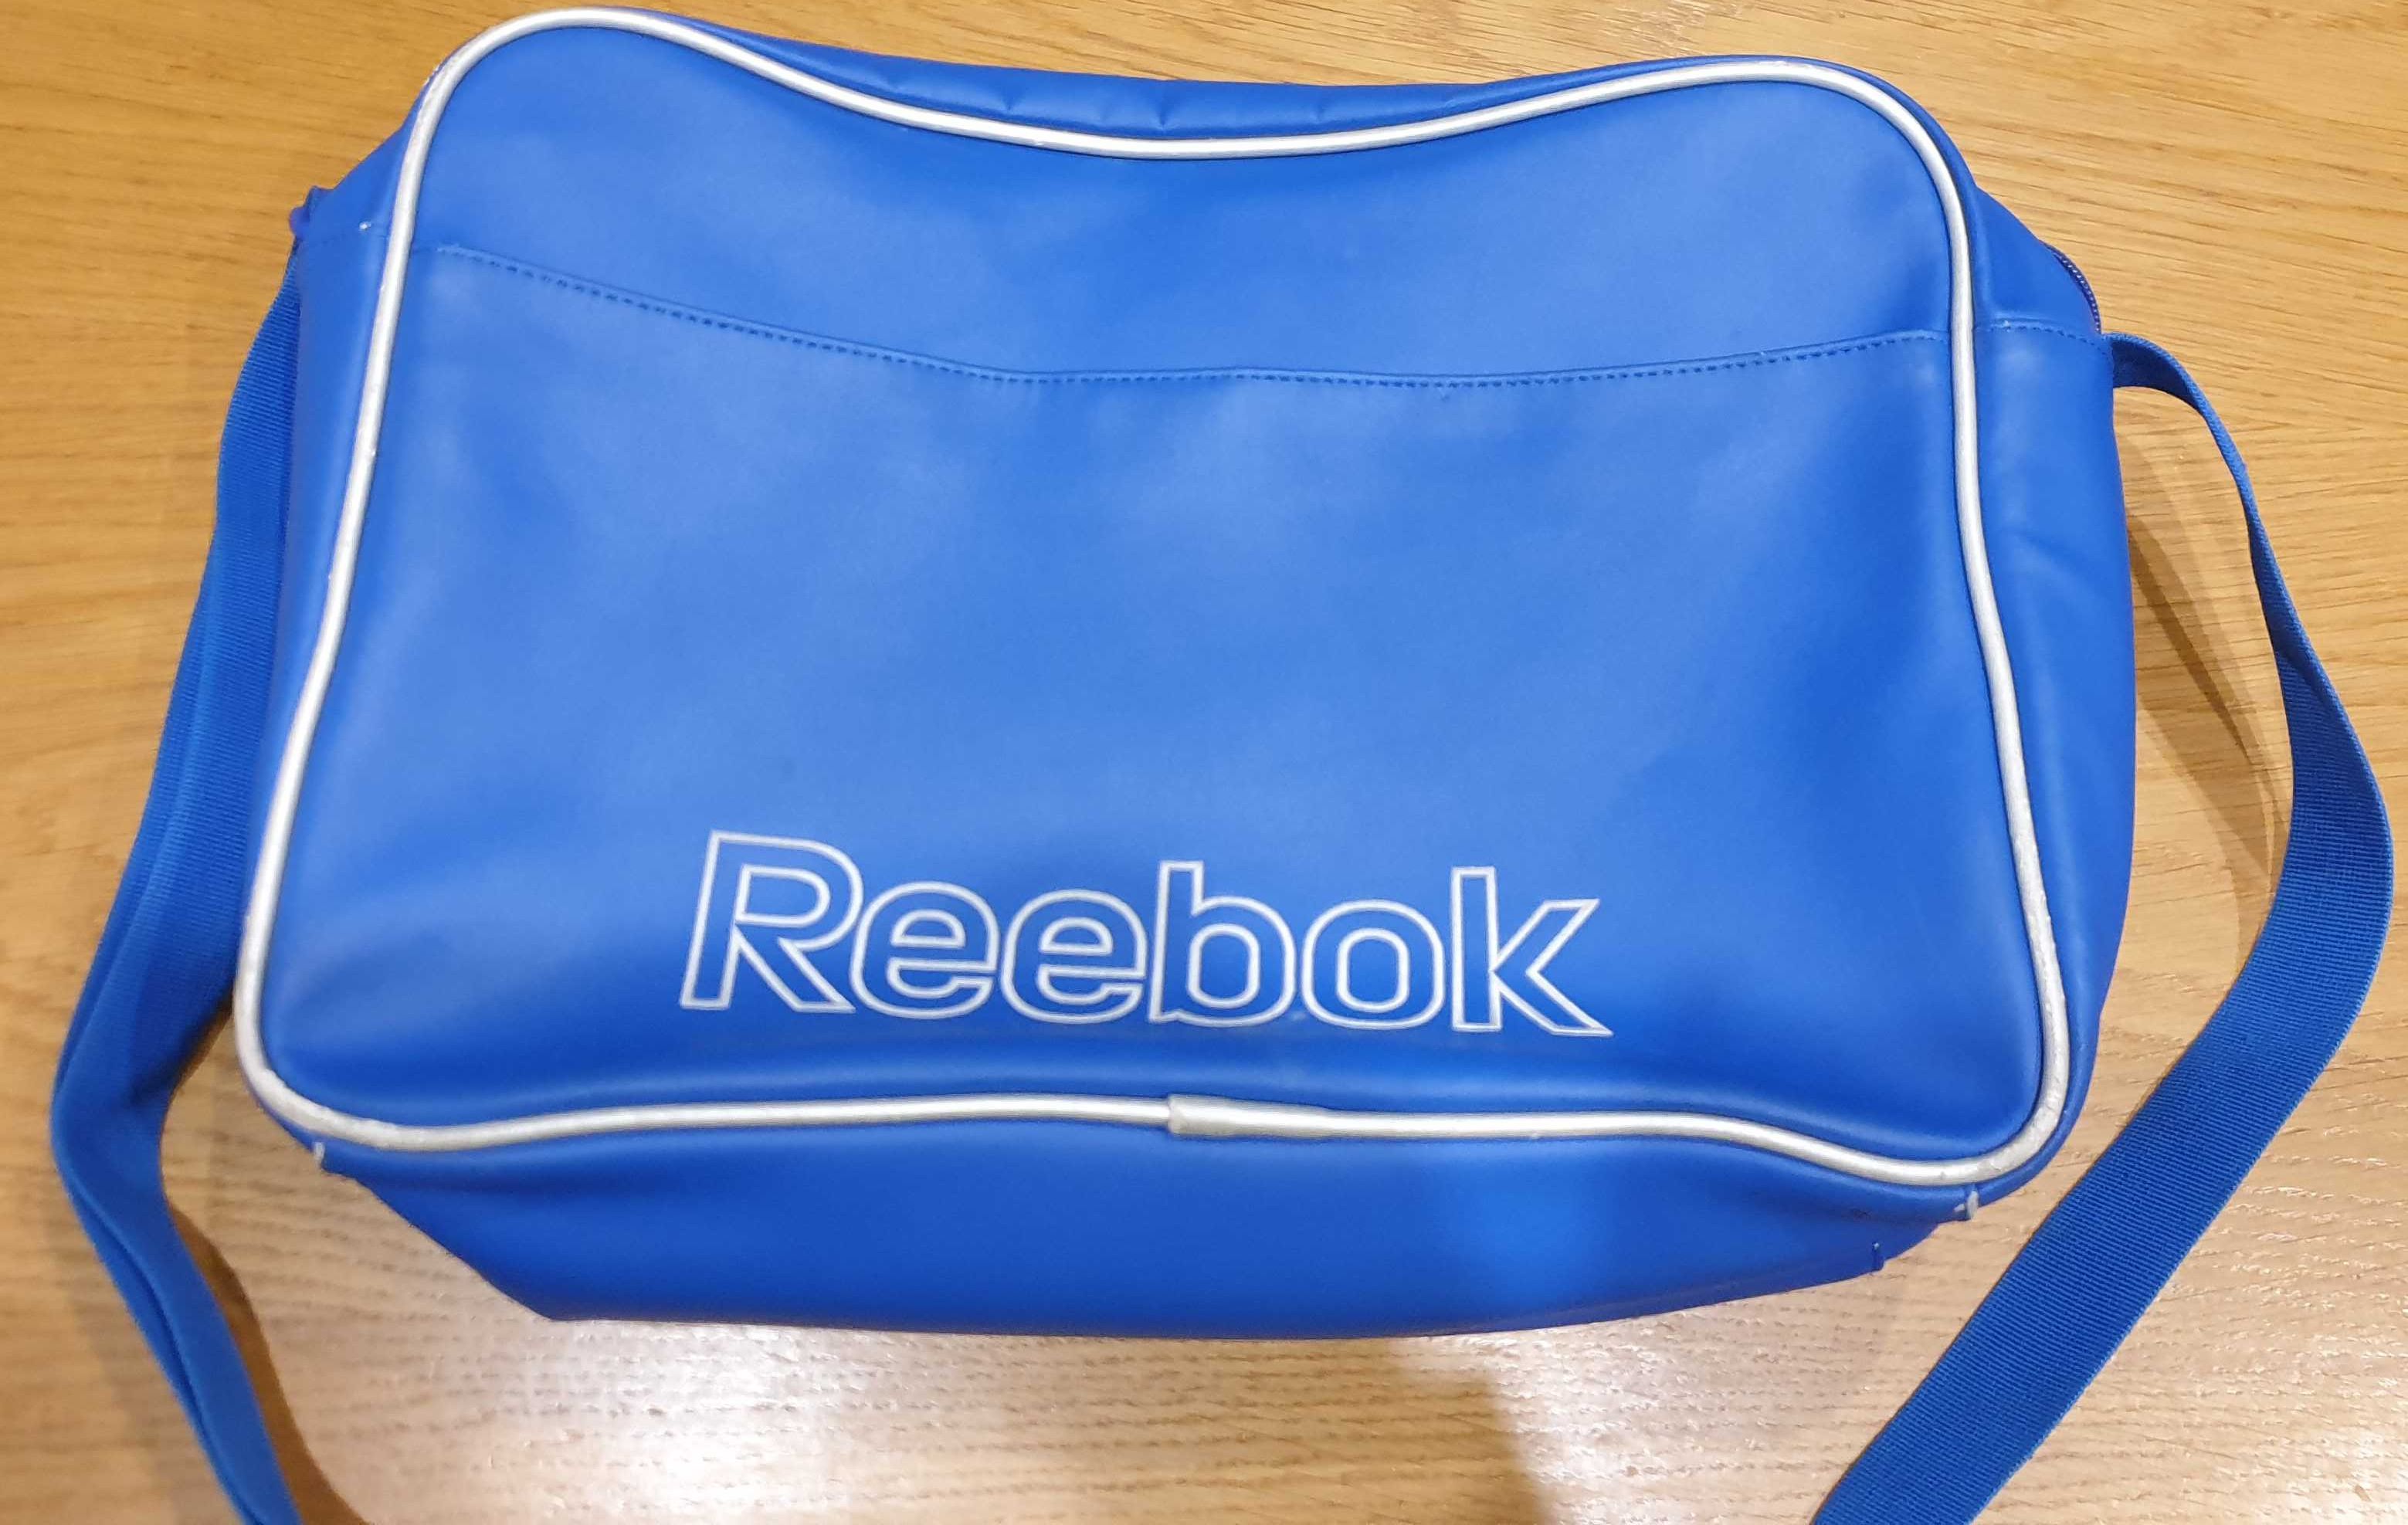 torba na ramię Reebok, niebieska - oldskulowa - używana